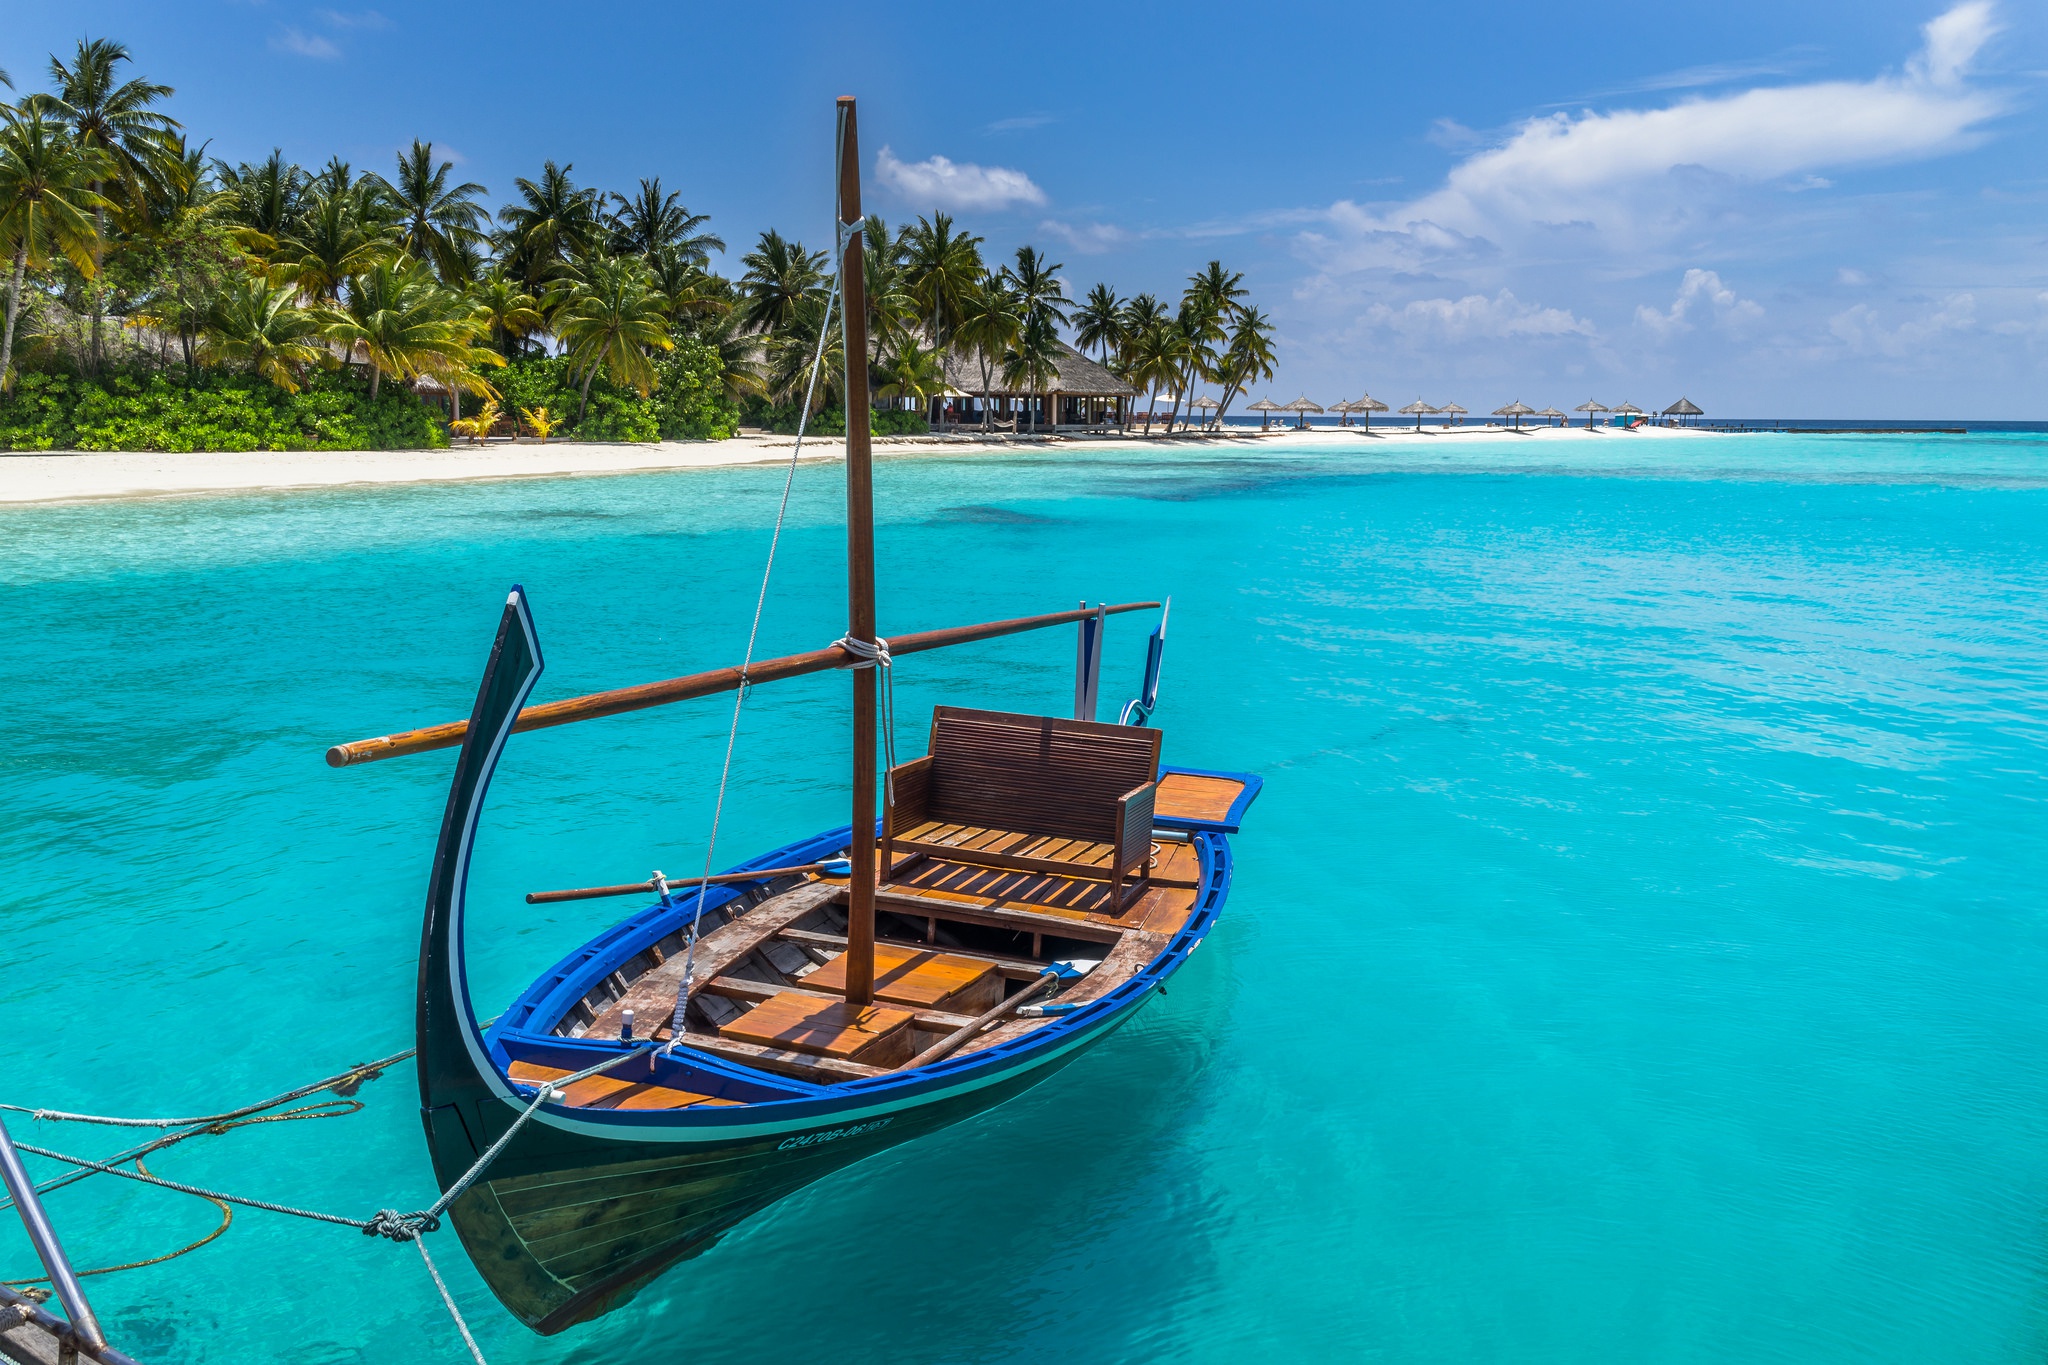 Boat island. Мальдивы пляж. Море пальмы яхта. Лодка в океане. Лодка в тропиках.